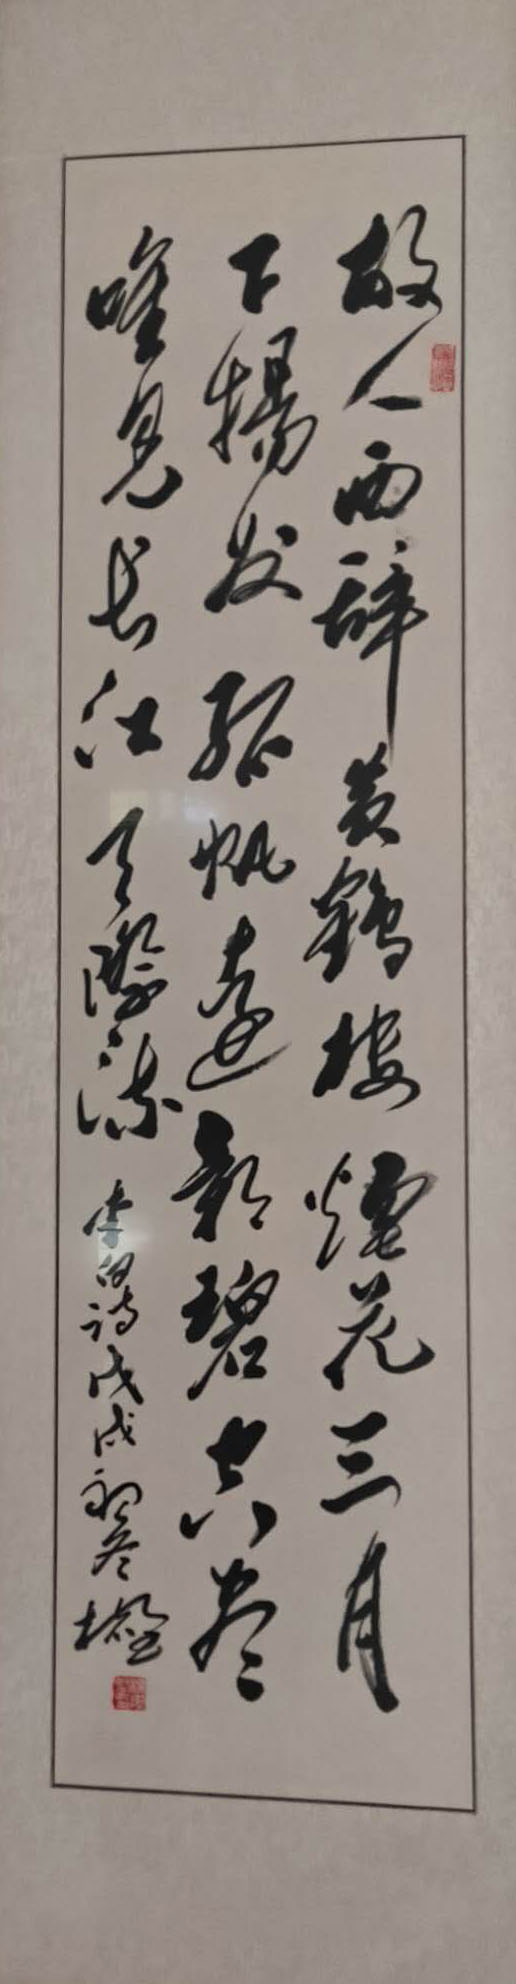 中国楹联学会中宣盛世文化艺术交流中心书画风采展示——杨志坚